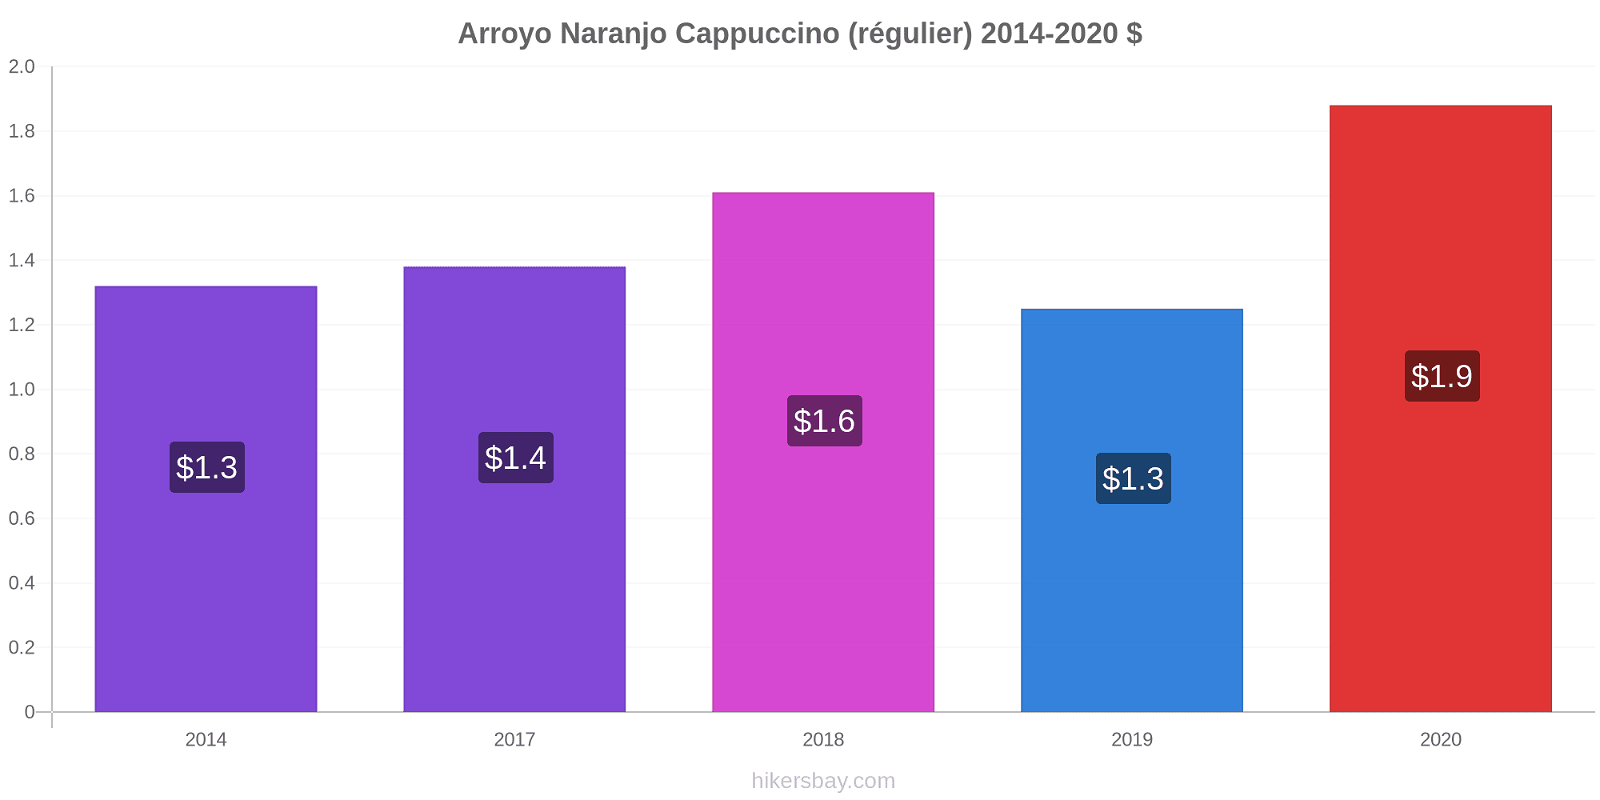 Arroyo Naranjo changements de prix Cappuccino (régulier) hikersbay.com